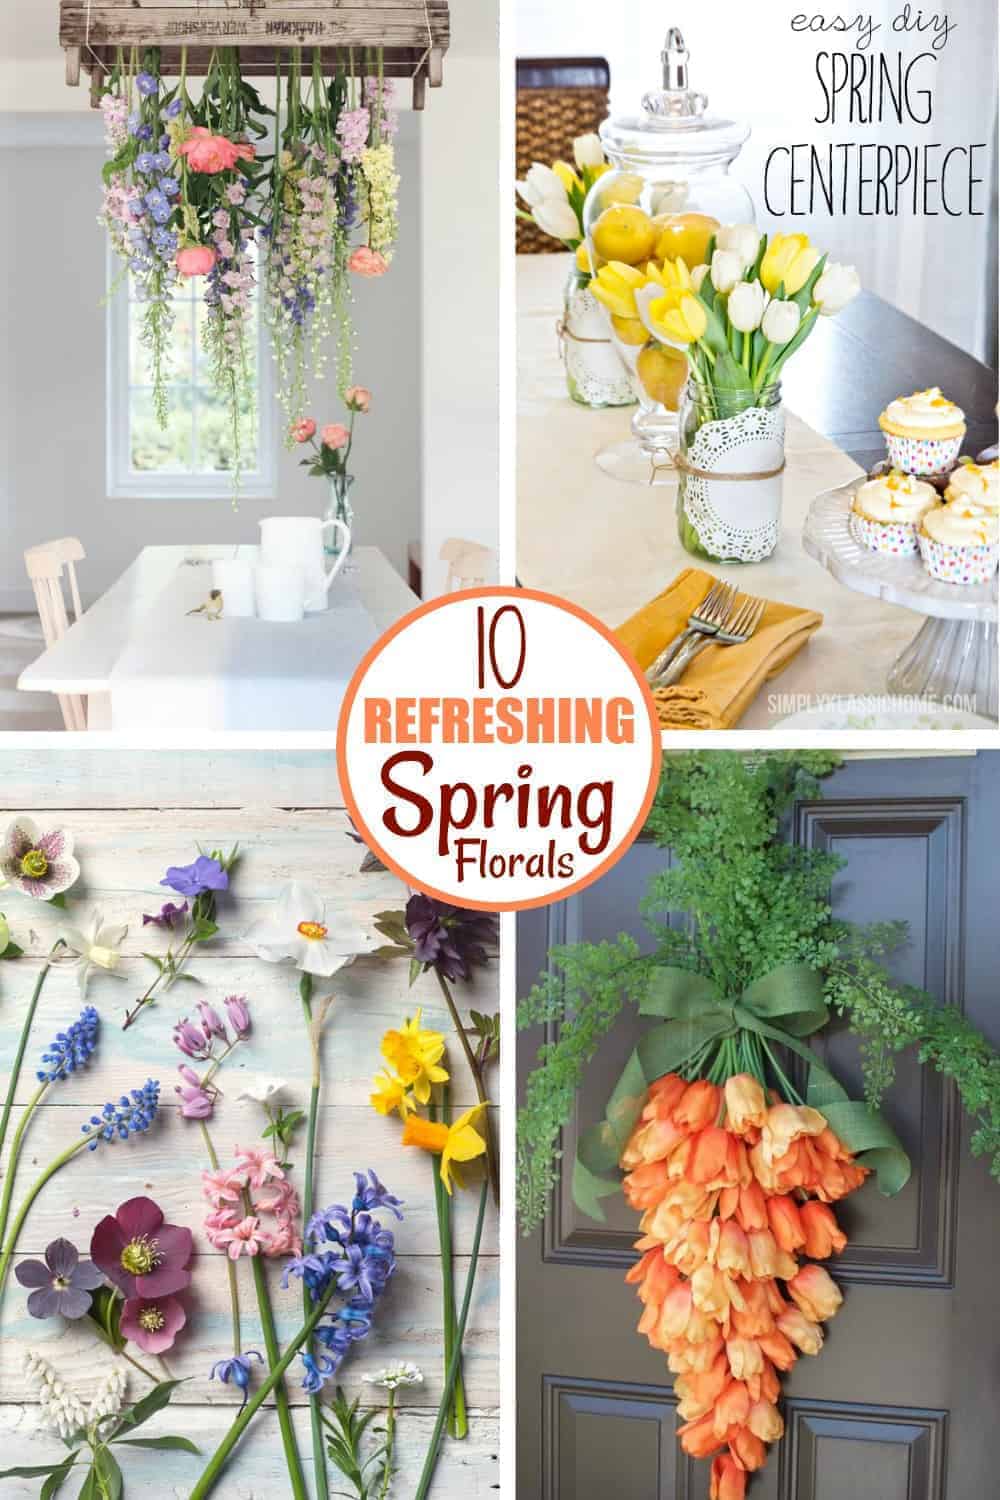 4 Beautiful spring floral decor set ups